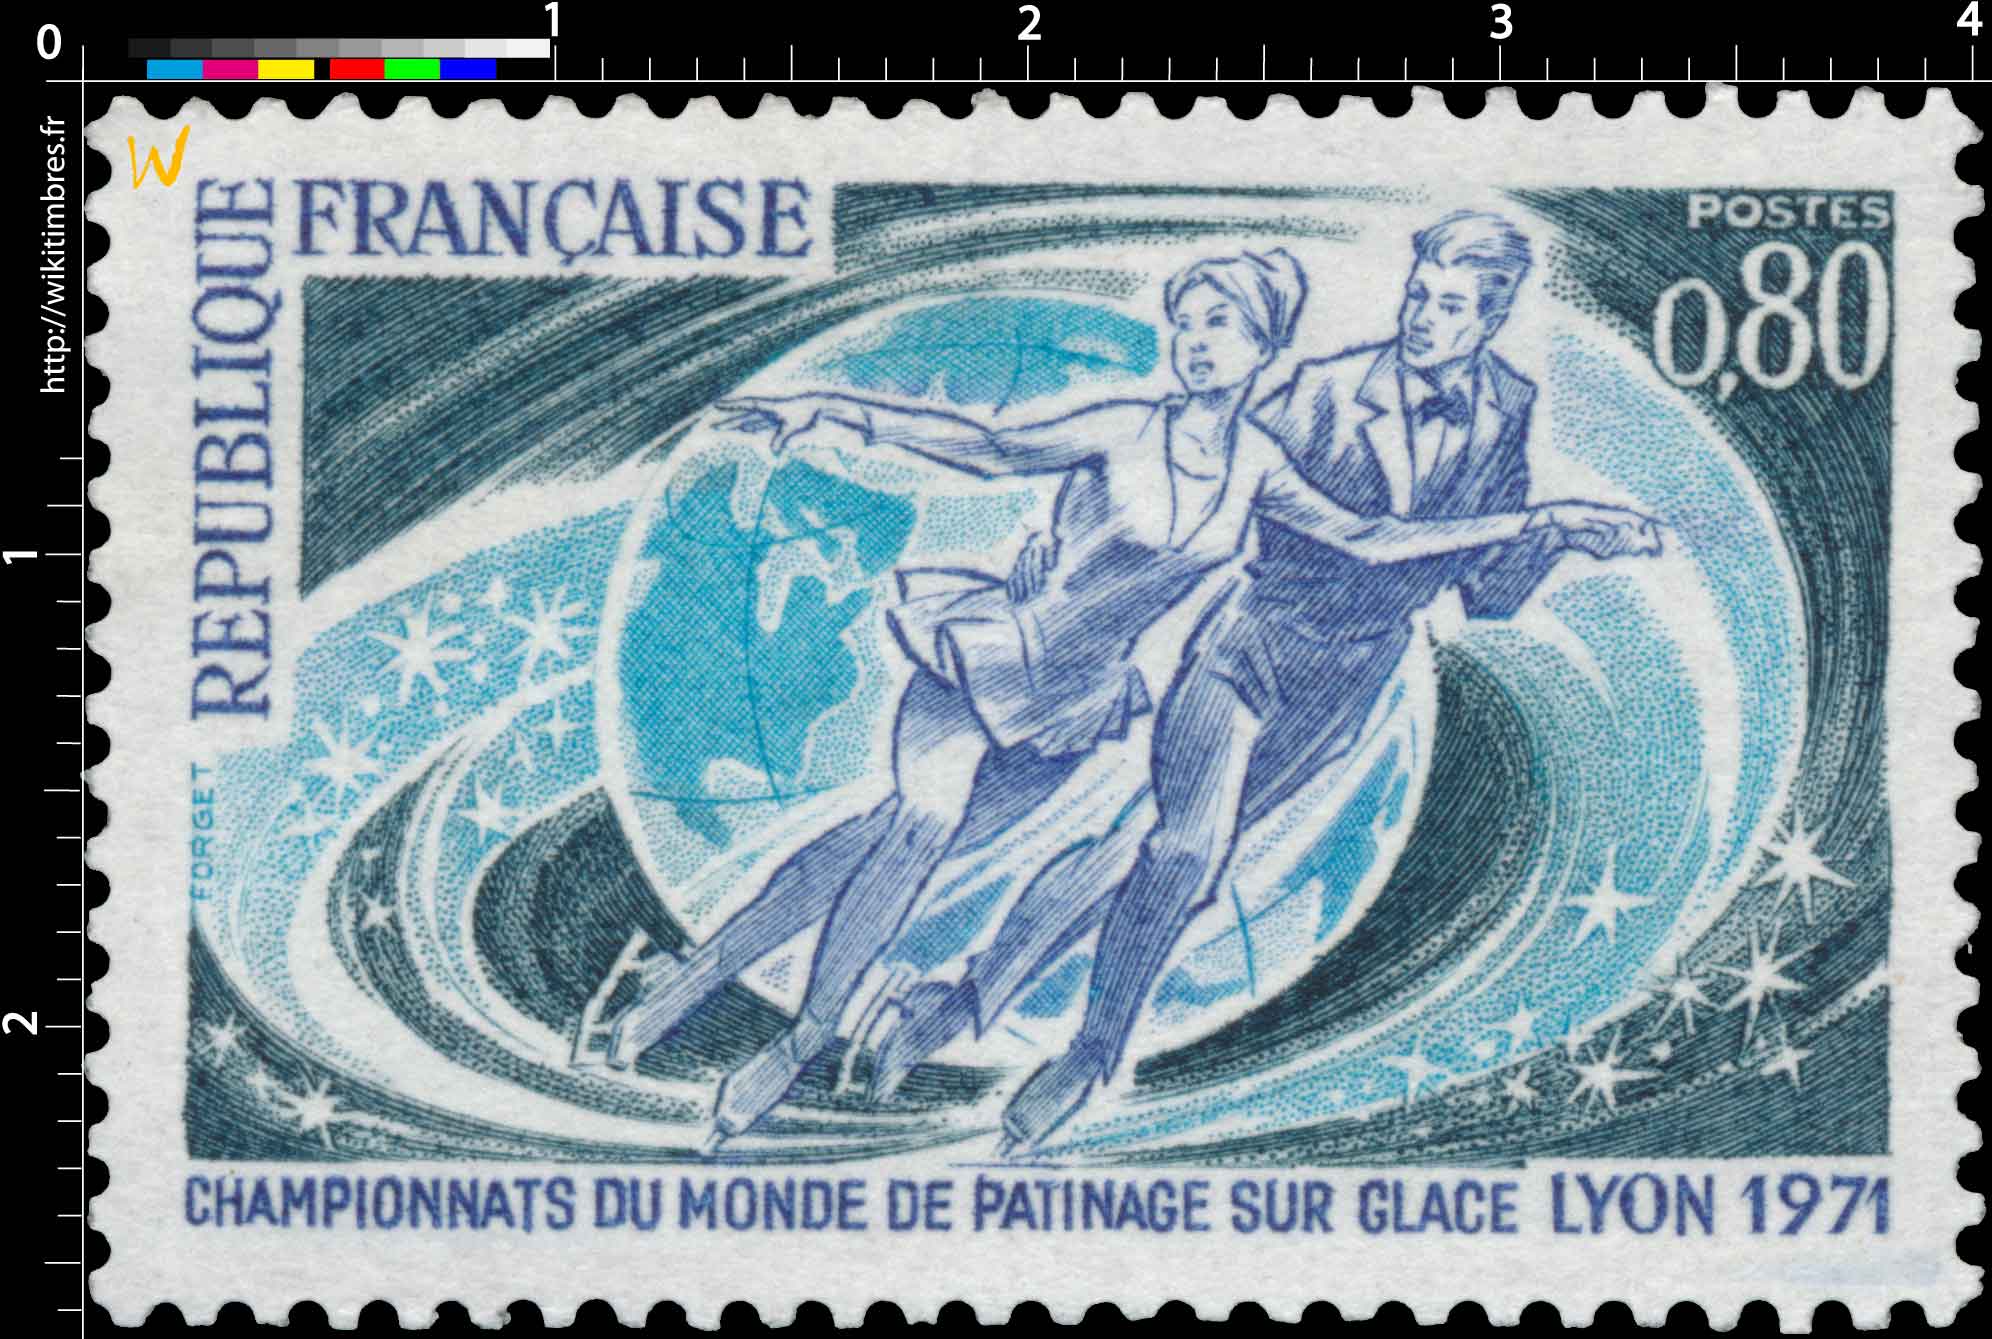 CHAMPIONNATS DU MONDE DE PATINAGE SUR GLACE LYON 1971